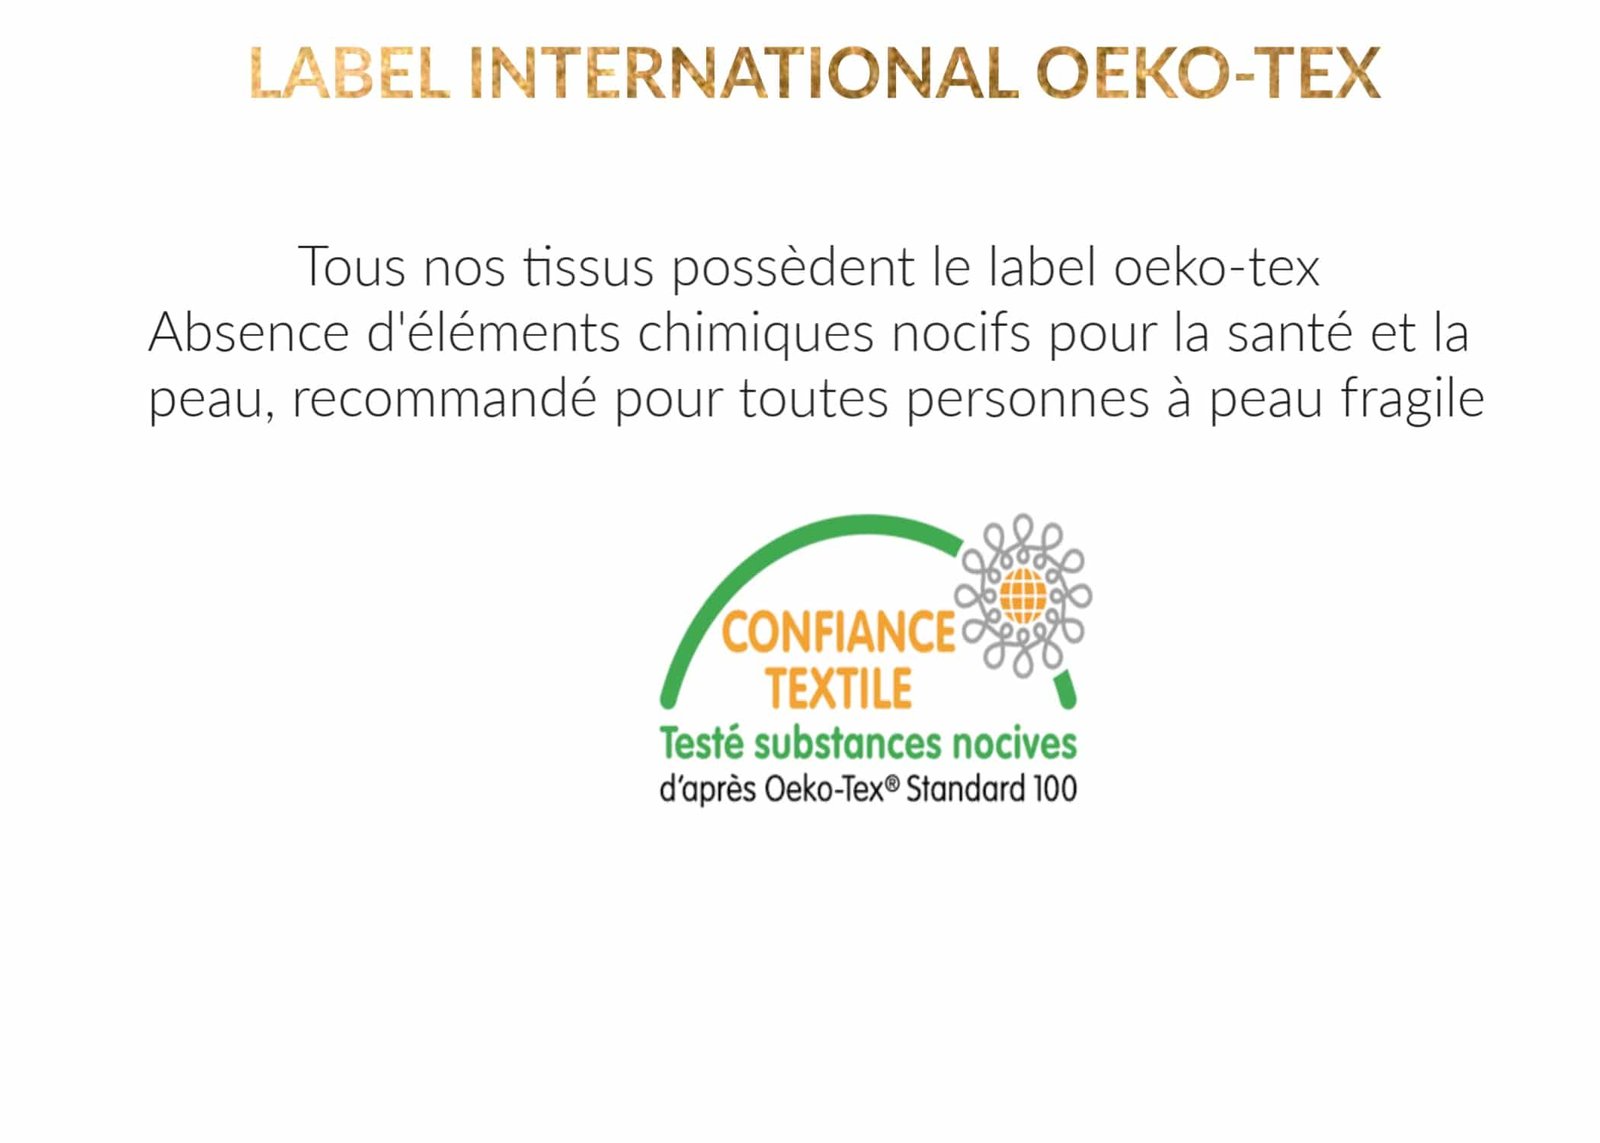 Secrets de beauté Culotte menstruelle absorbante eco Lavable =3 tampons Bambou Haute qualité Bio Label OekoTex Peau Sensible sans Produit Chimique 